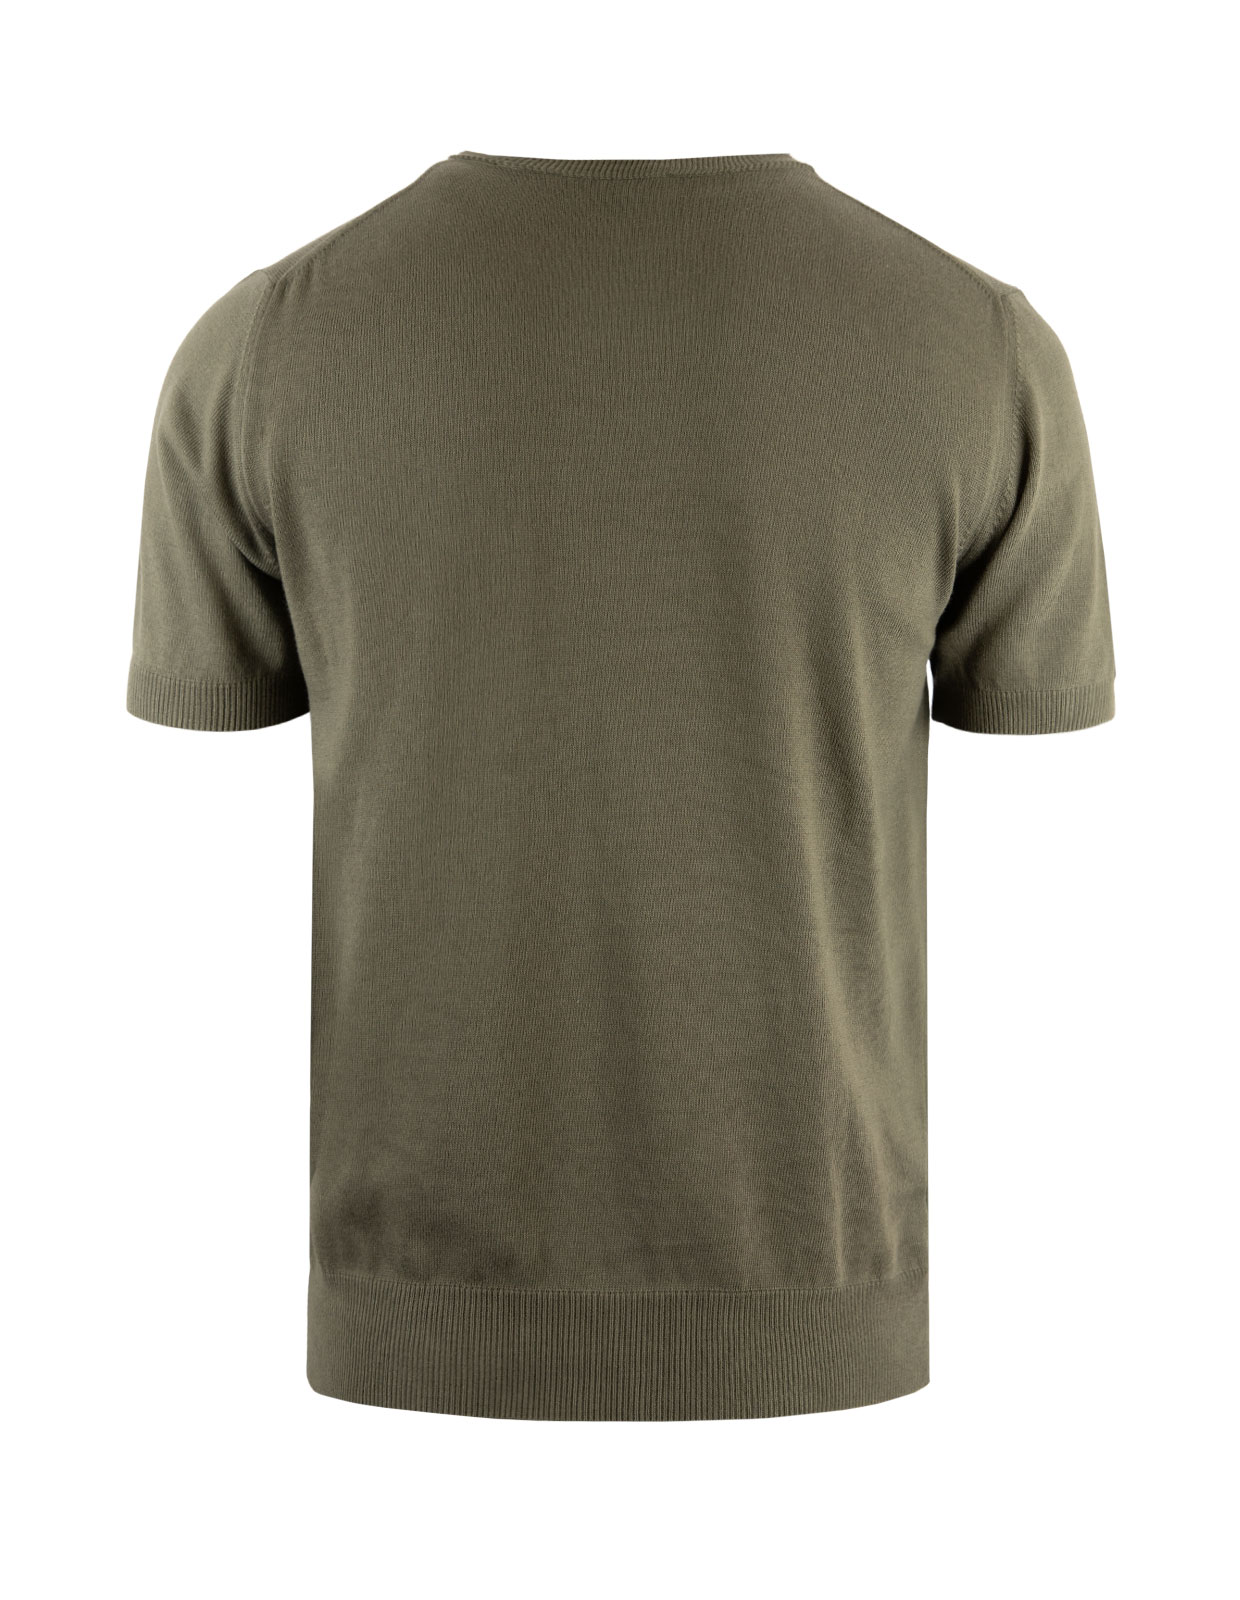 T-shirt Finstickad Bomull Militärgrön